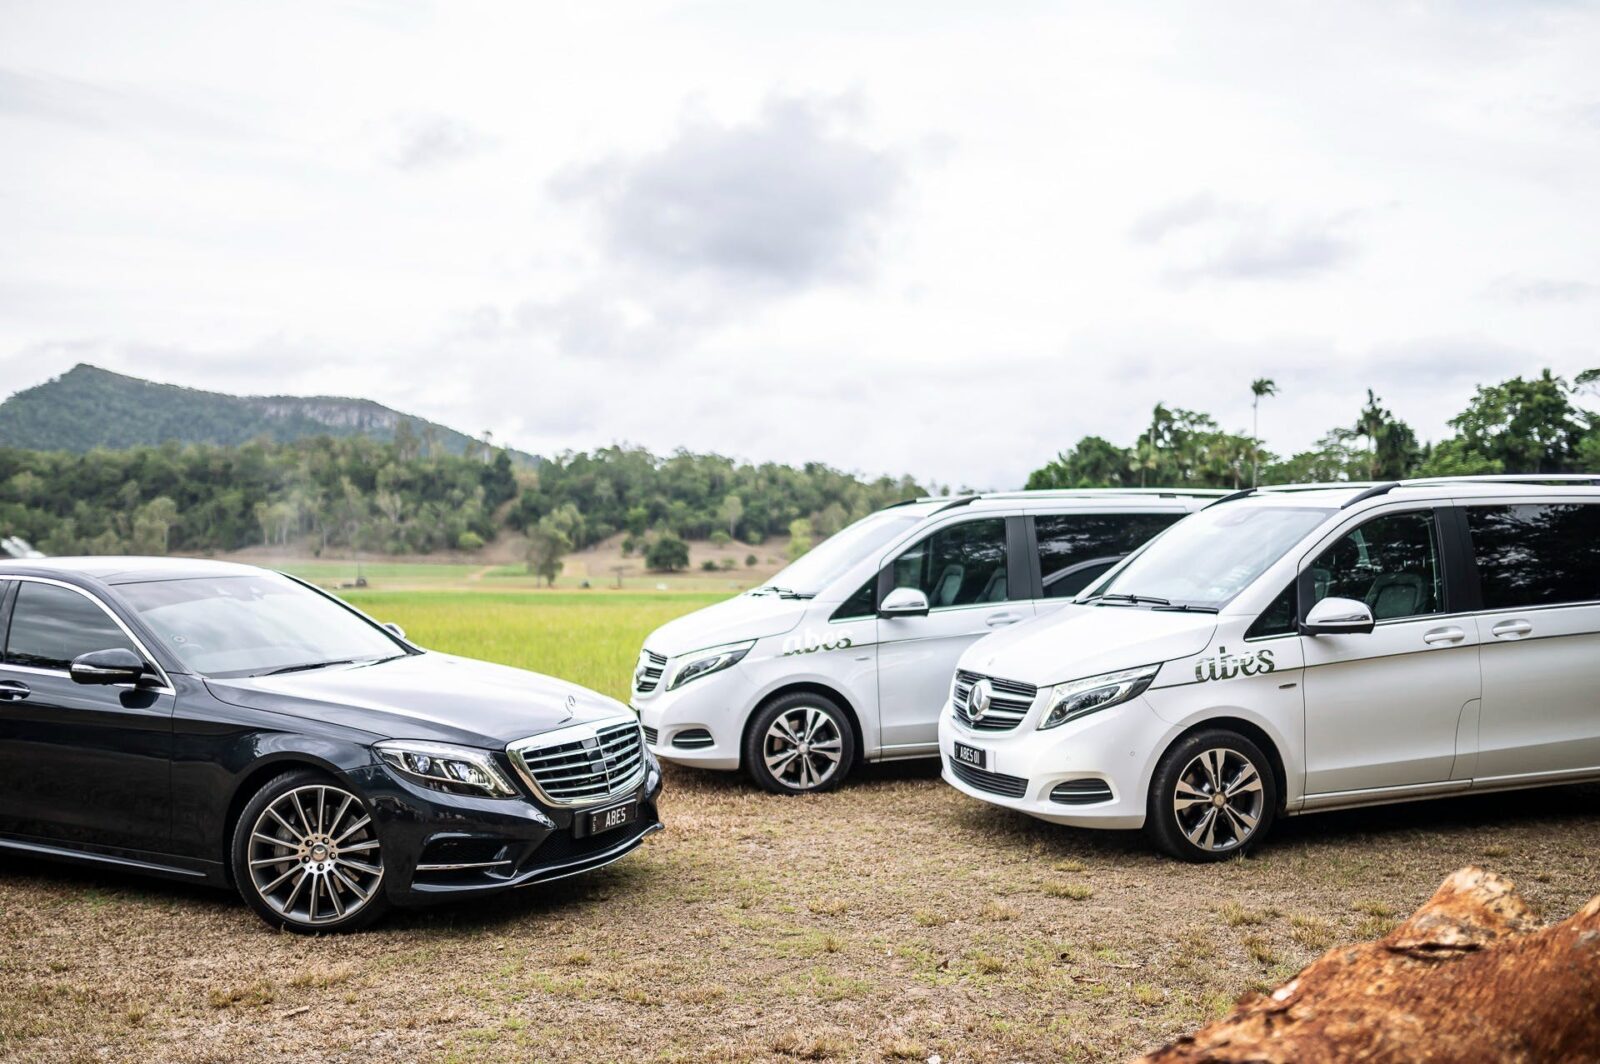 Our Fleet of Luxurious Mercedes Benz Vehicles